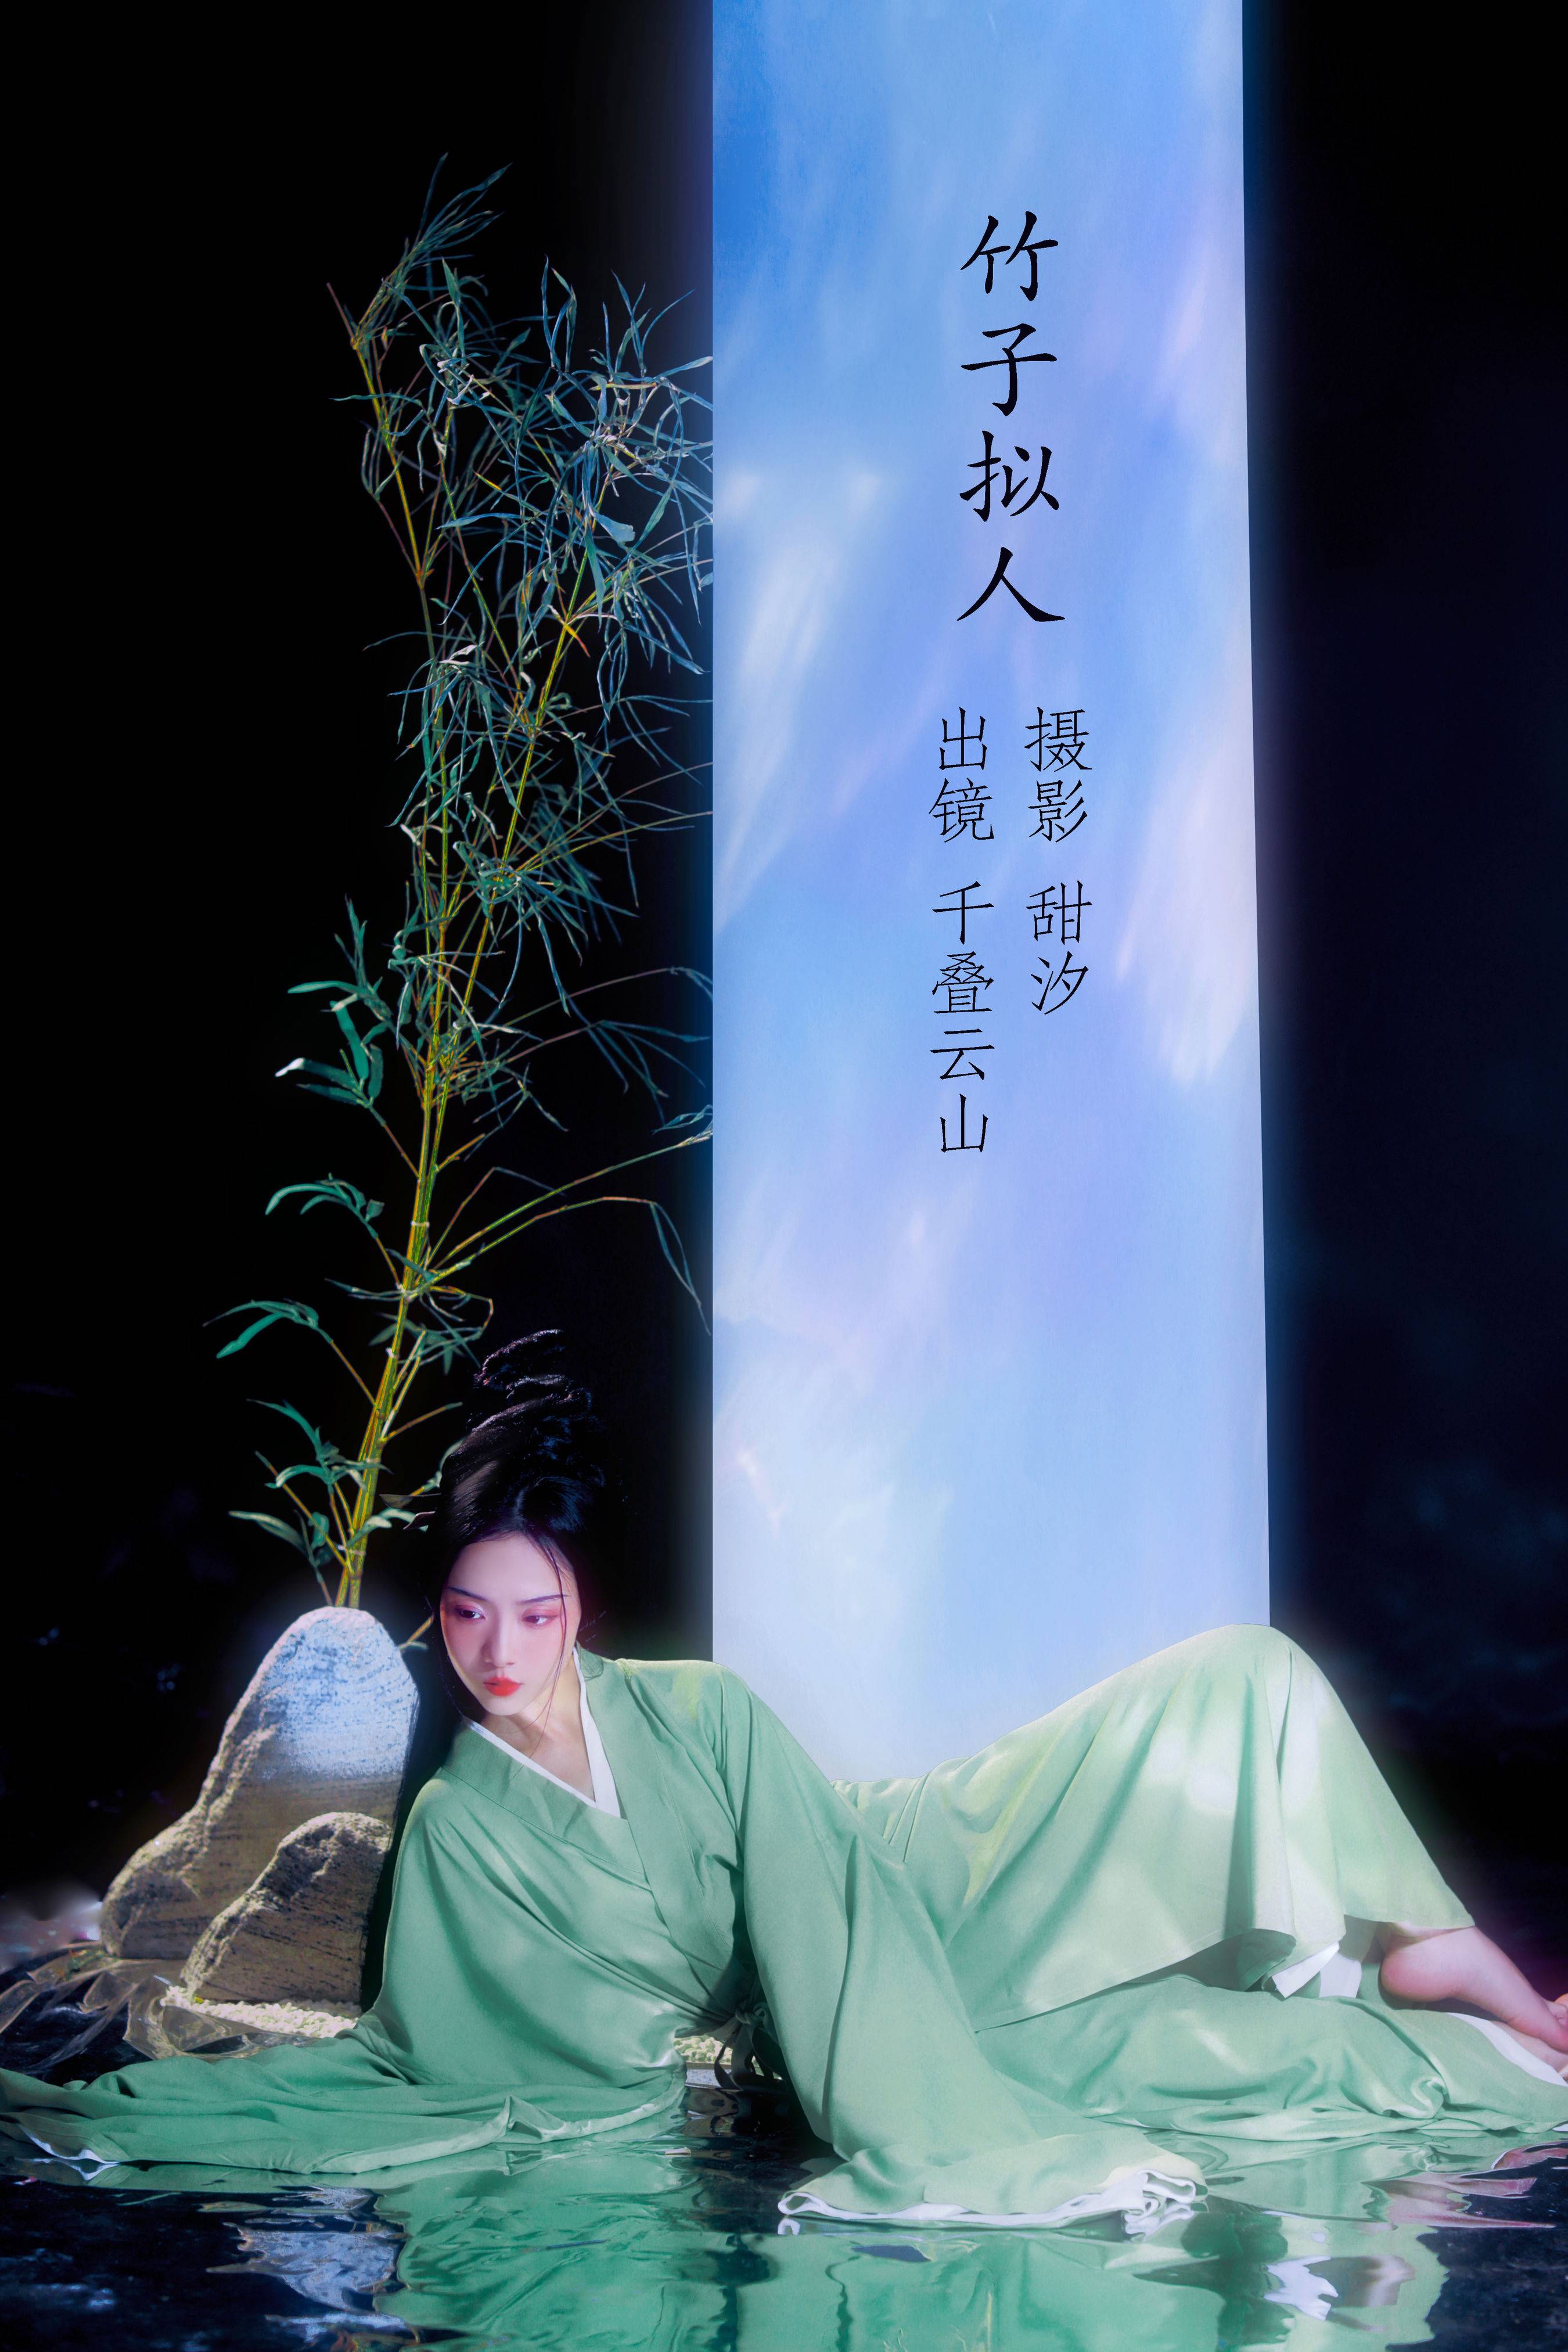 竹子拟人 仙气 意境 中国风 古风 唯美 艺术 人像&YiTuYu艺图语-1